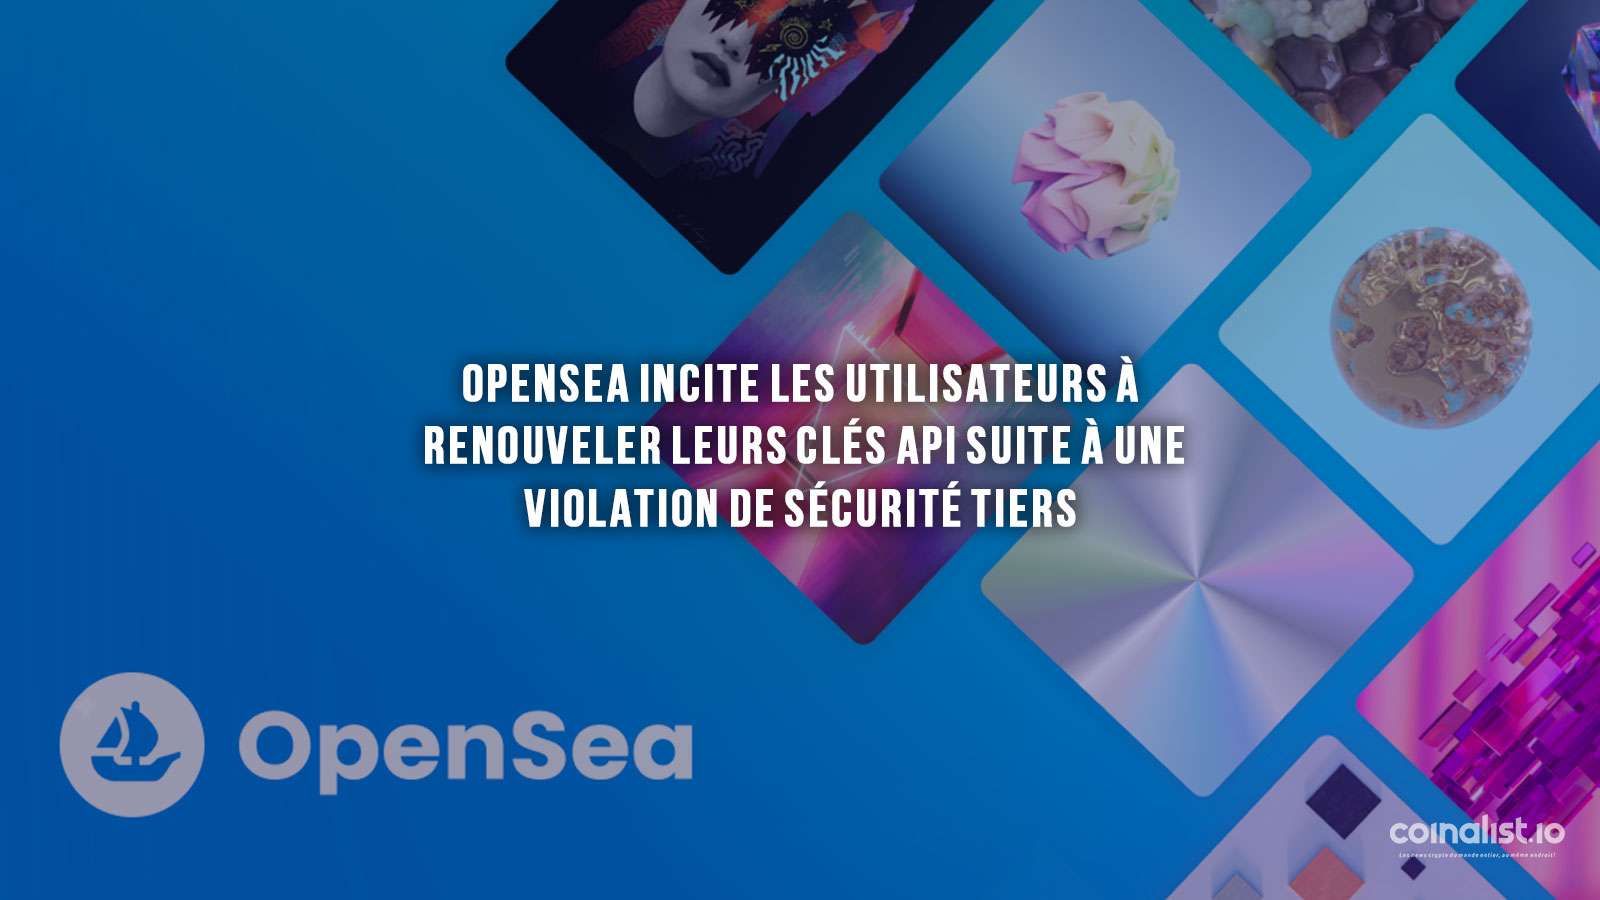 Opensea Cle Securite